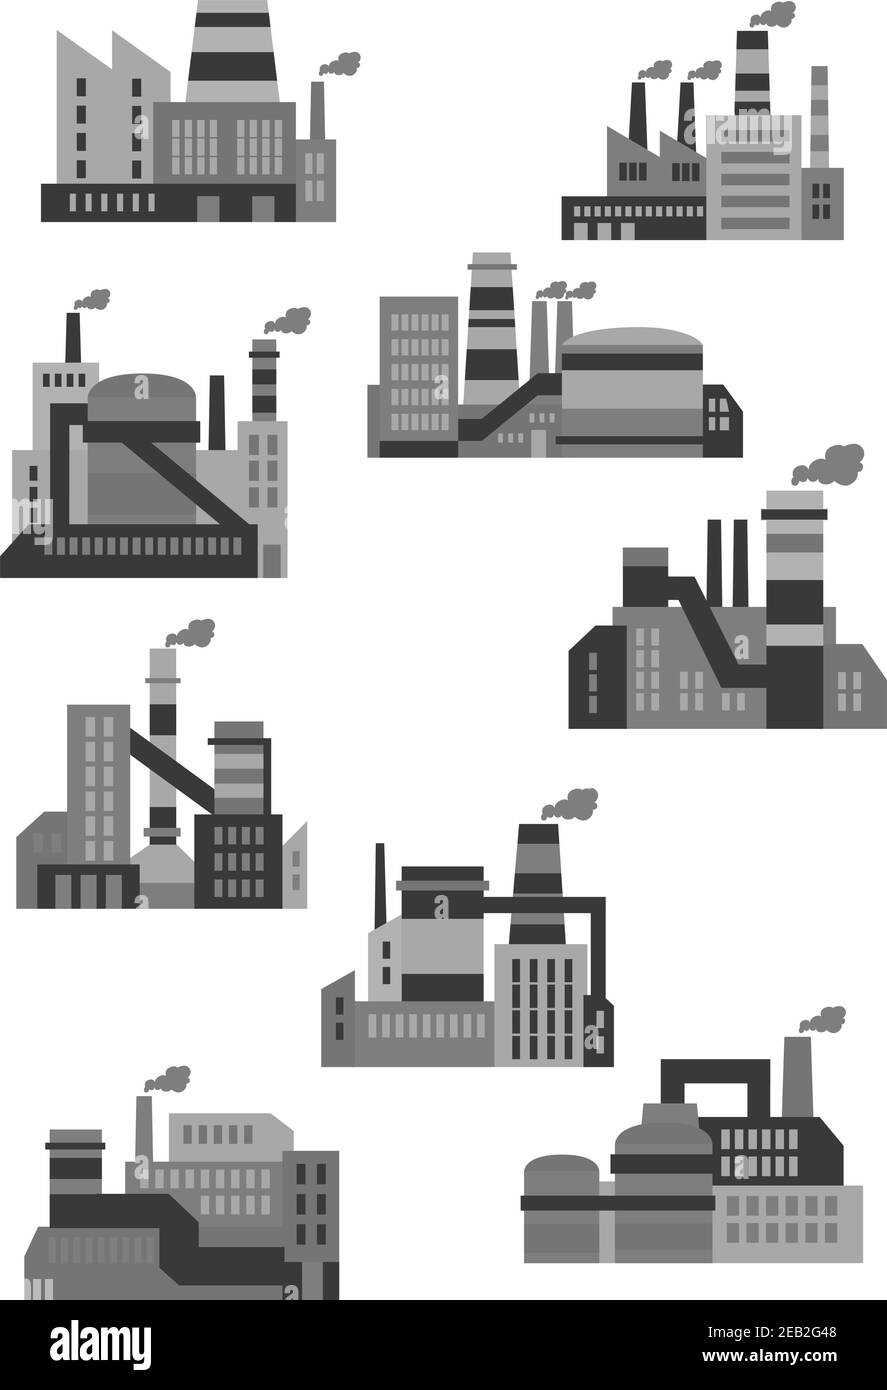 Les icônes des usines et des usines industrielles plates sont composées de bâtiments, de machines et de cheminées à fumer Illustration de Vecteur